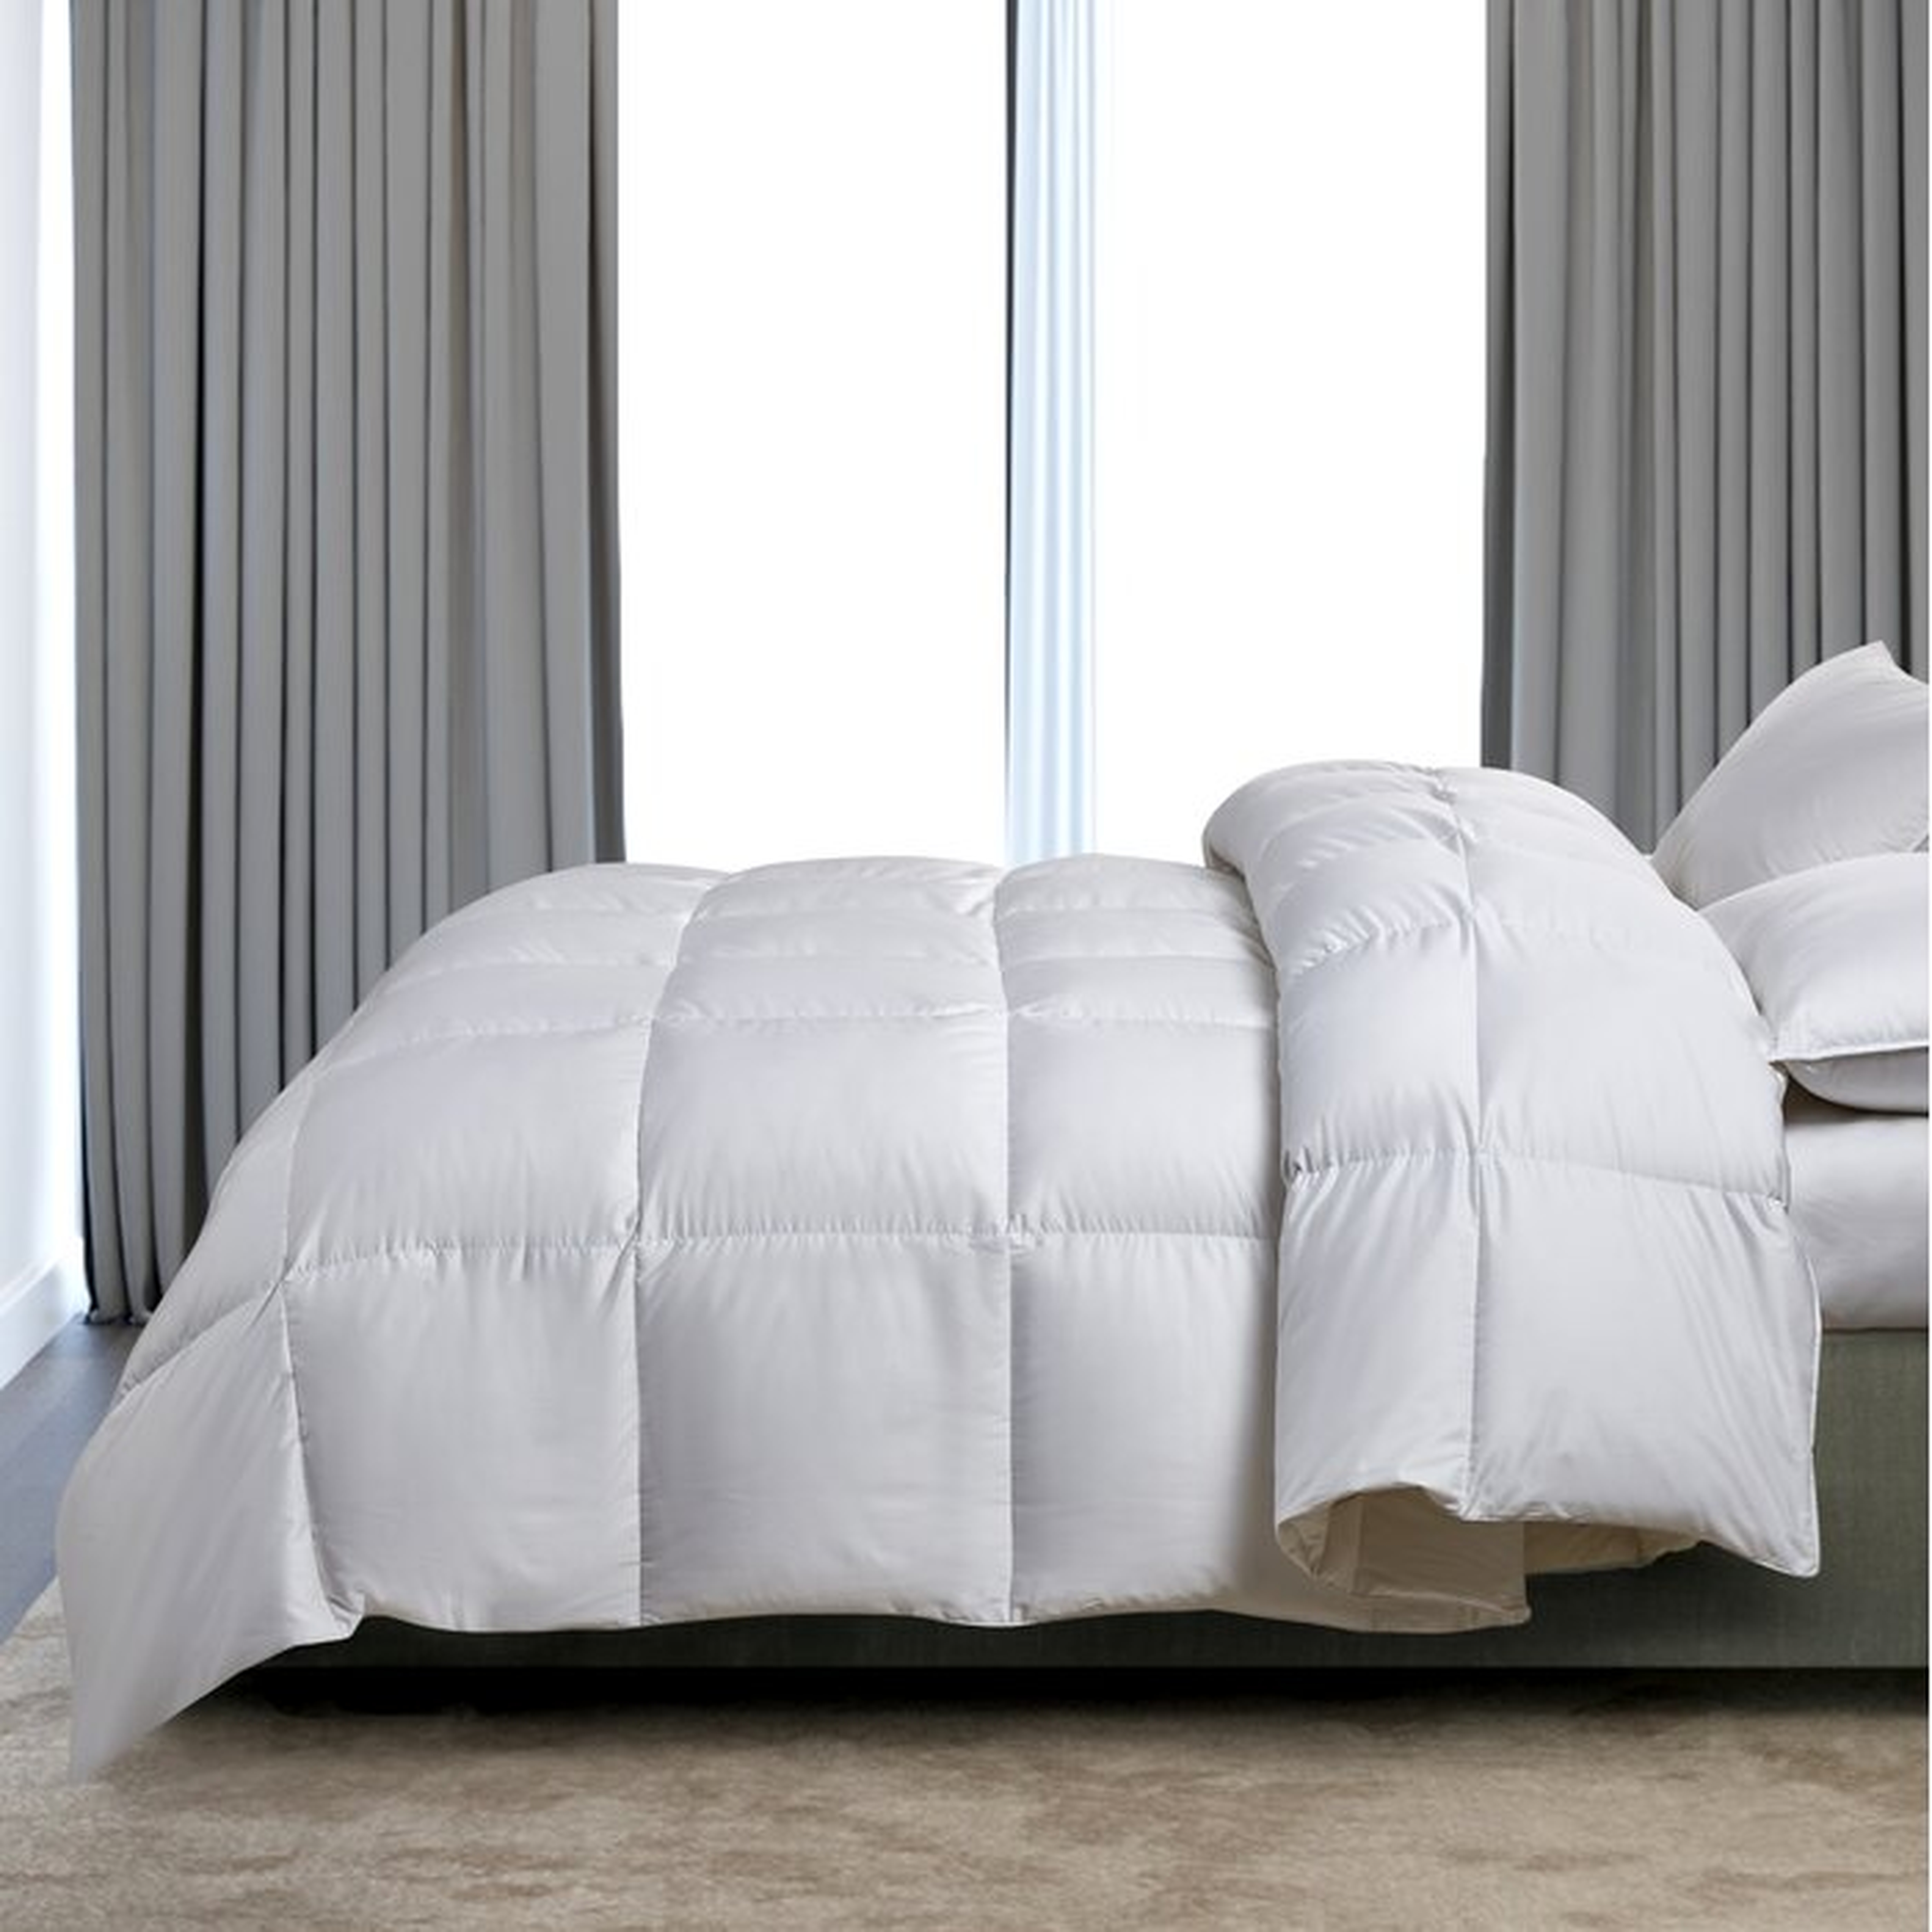 Serta Super Soft 300 Thread Count White Down Fiber Comforter By Serta Light Warmth - Perigold